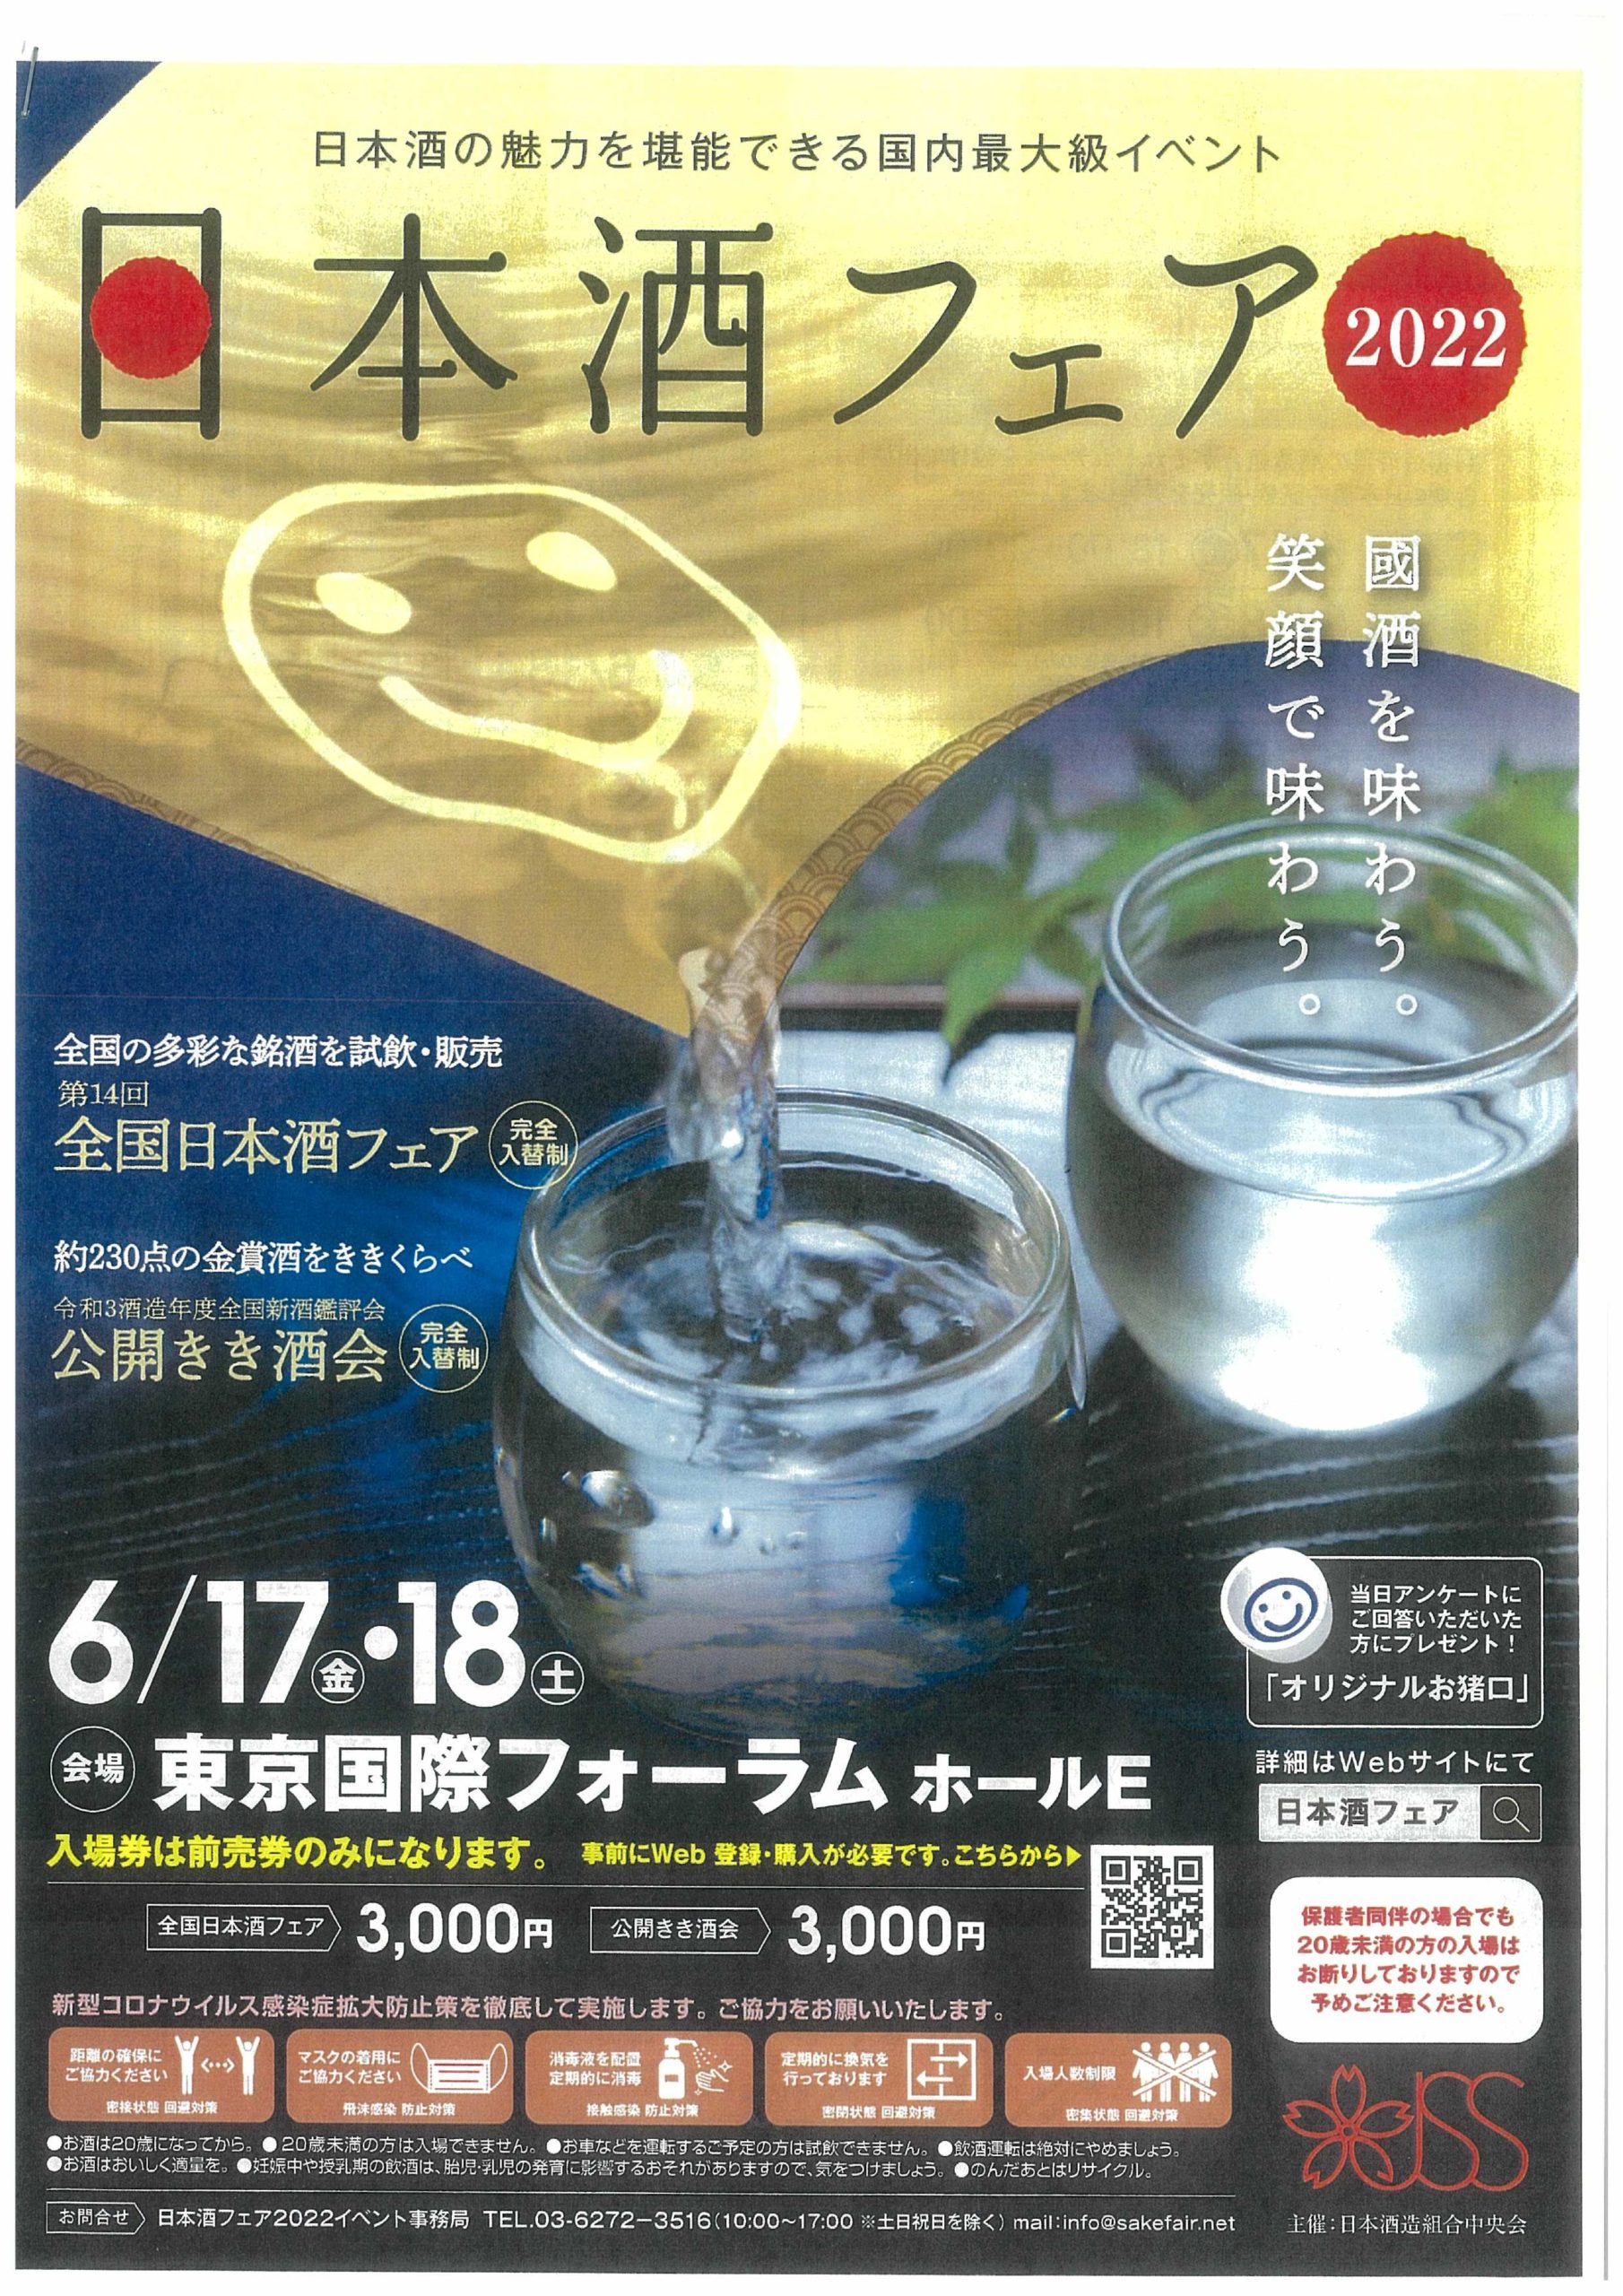 6/17㈯･18㈰日本酒フェアに参加します。